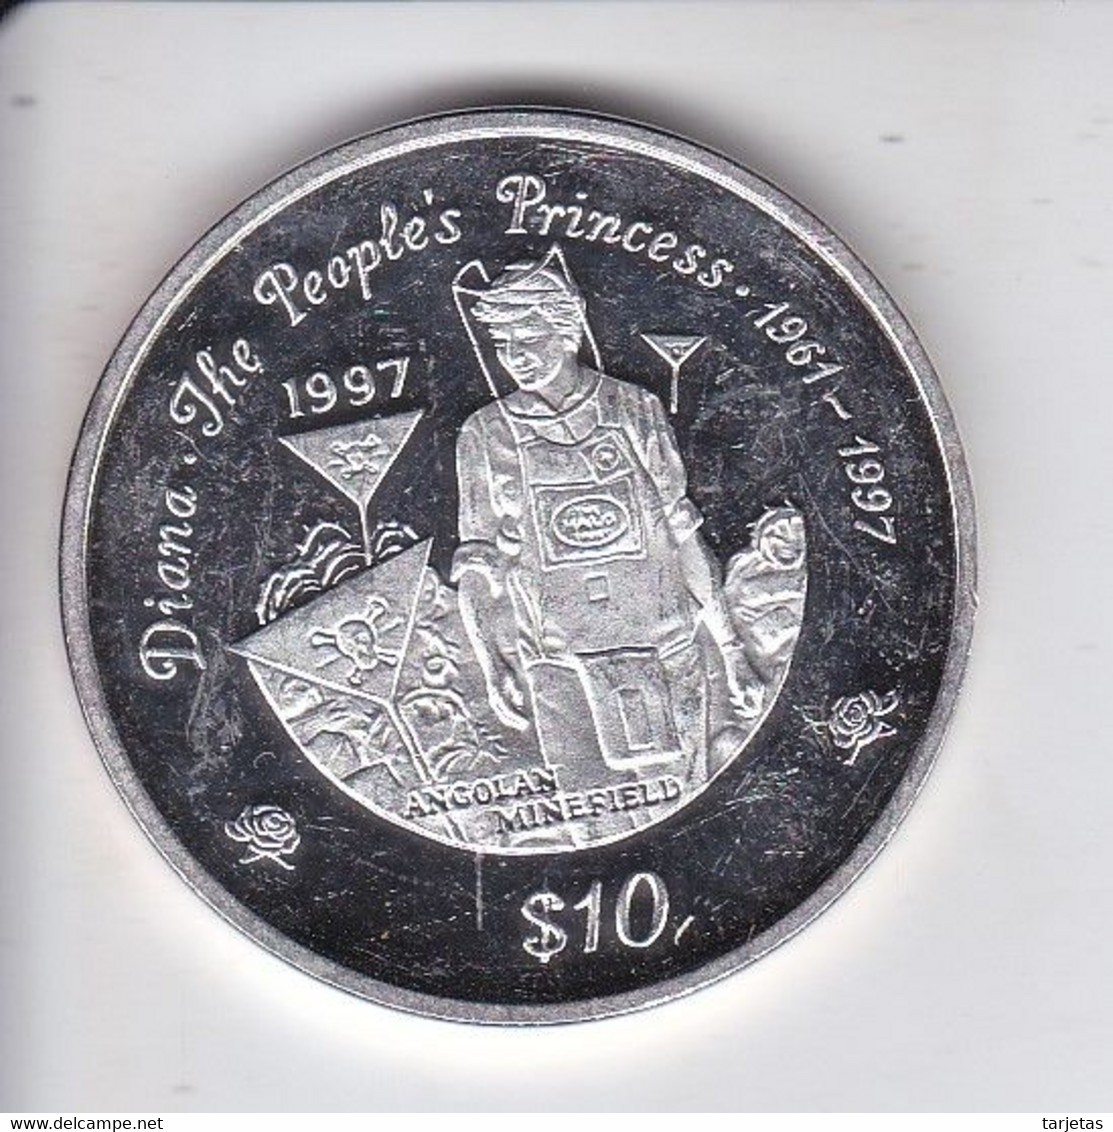 MONEDA DE PLATA DE LIBERIA DE 20 DOLLARS DEL AÑO 1997 DIANA THE PEOPLE'S PRINCESS - Liberia